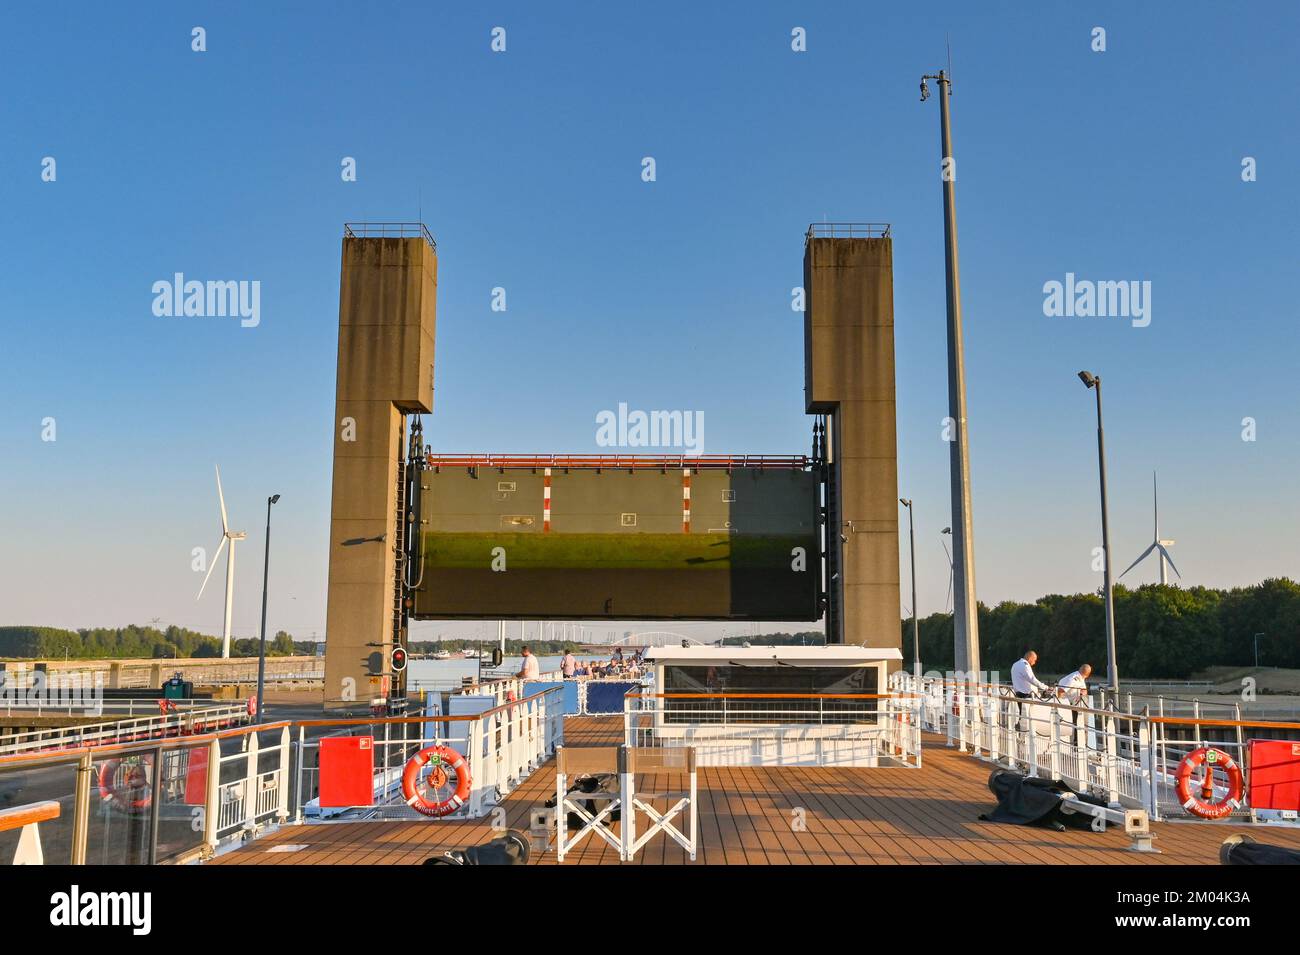 Rilland, Niederlande - August 2022: Flussrundfahrt unter dem schweren Stahltor einer großen Kanalschleuse Stockfoto